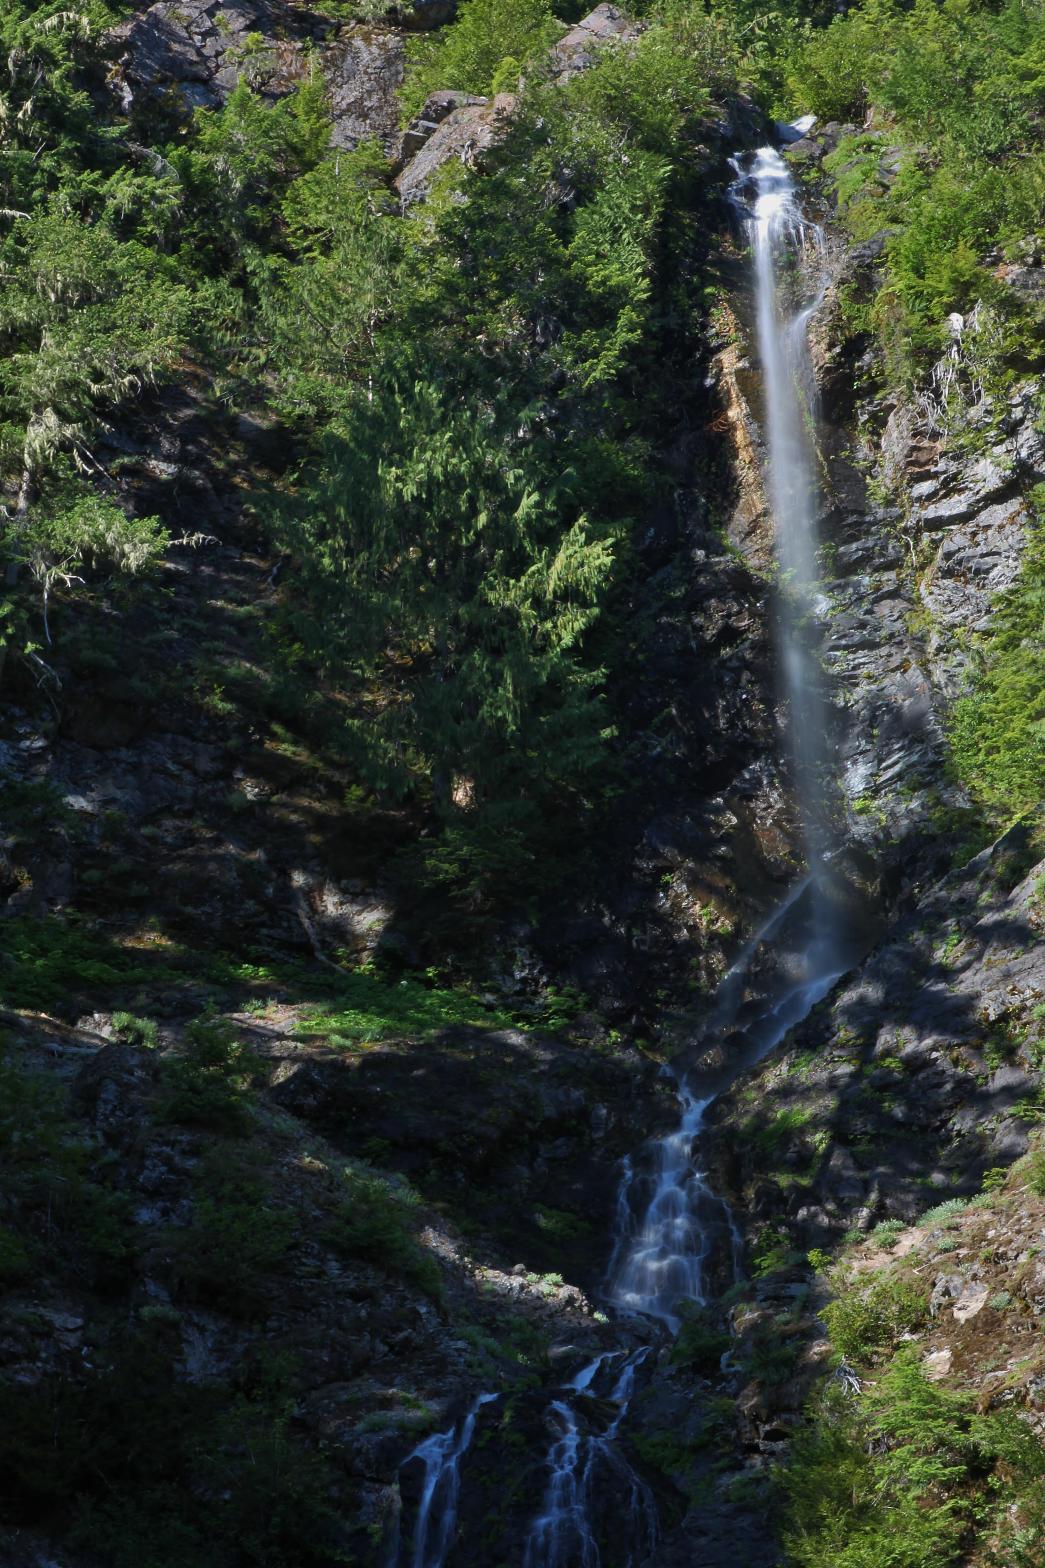 Upper half of Tamqwilas Falls